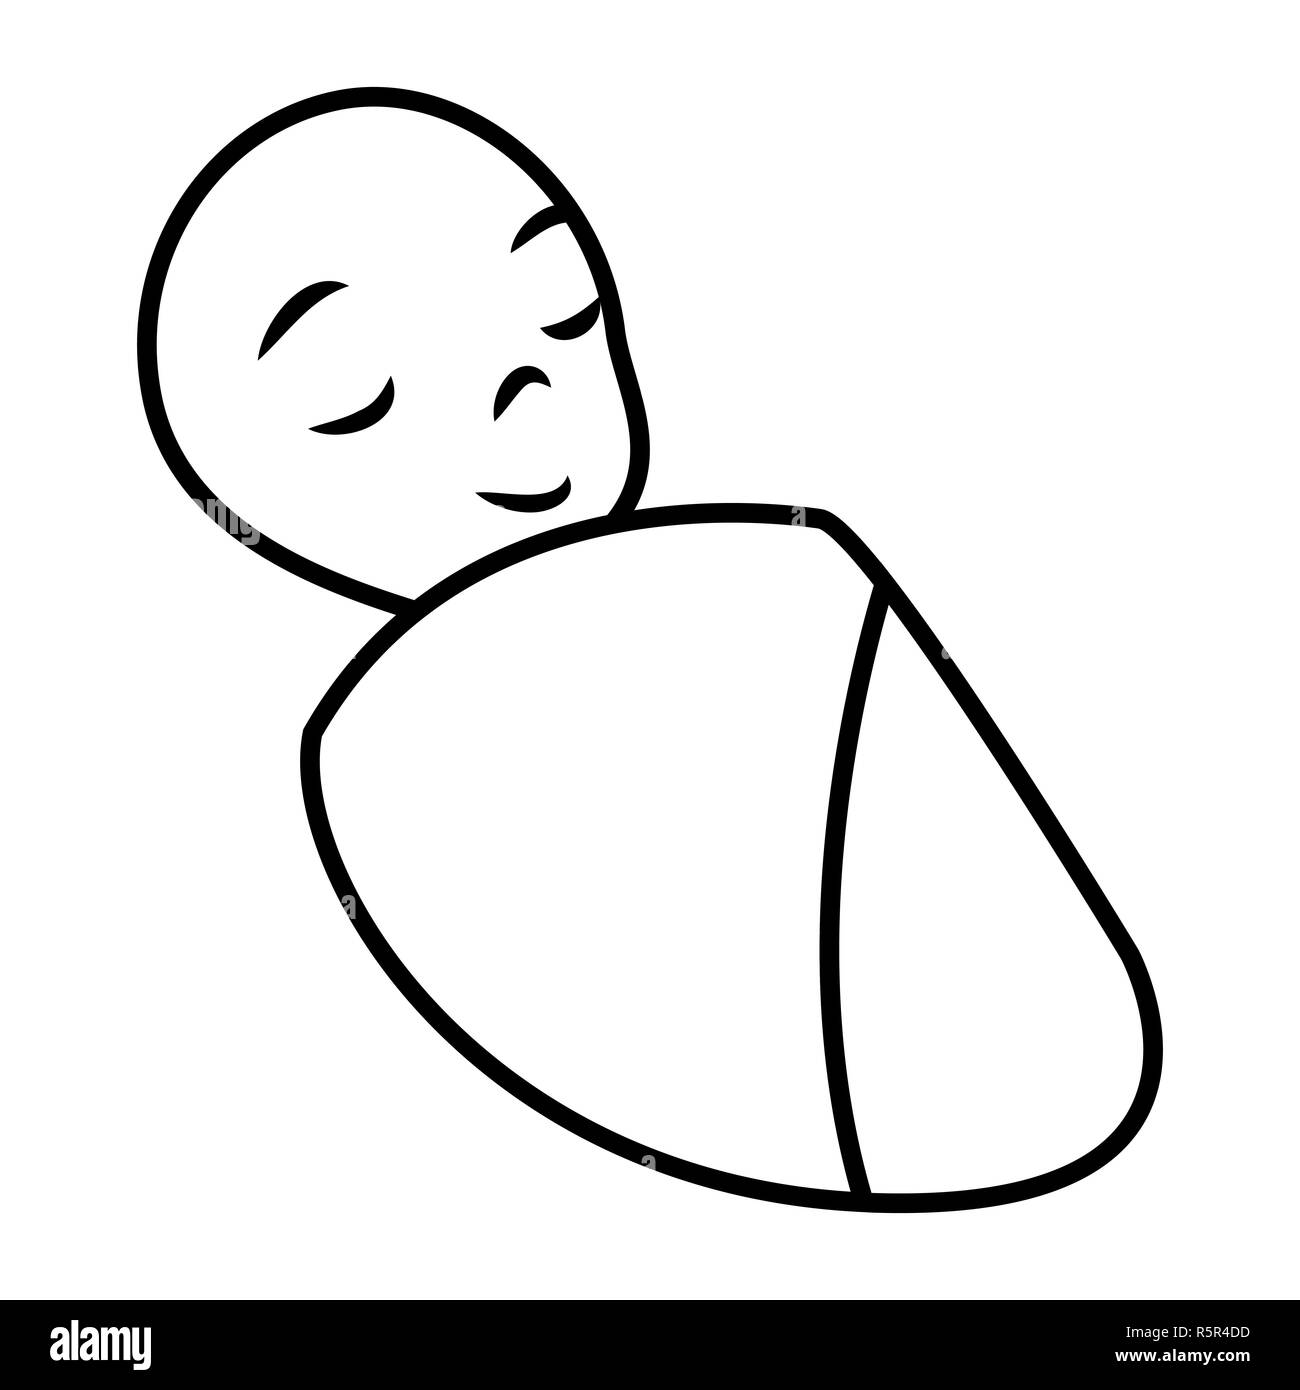 Bébé nouveau-né silhouette vector illustration design isolé sur fond blanc. Banque D'Images